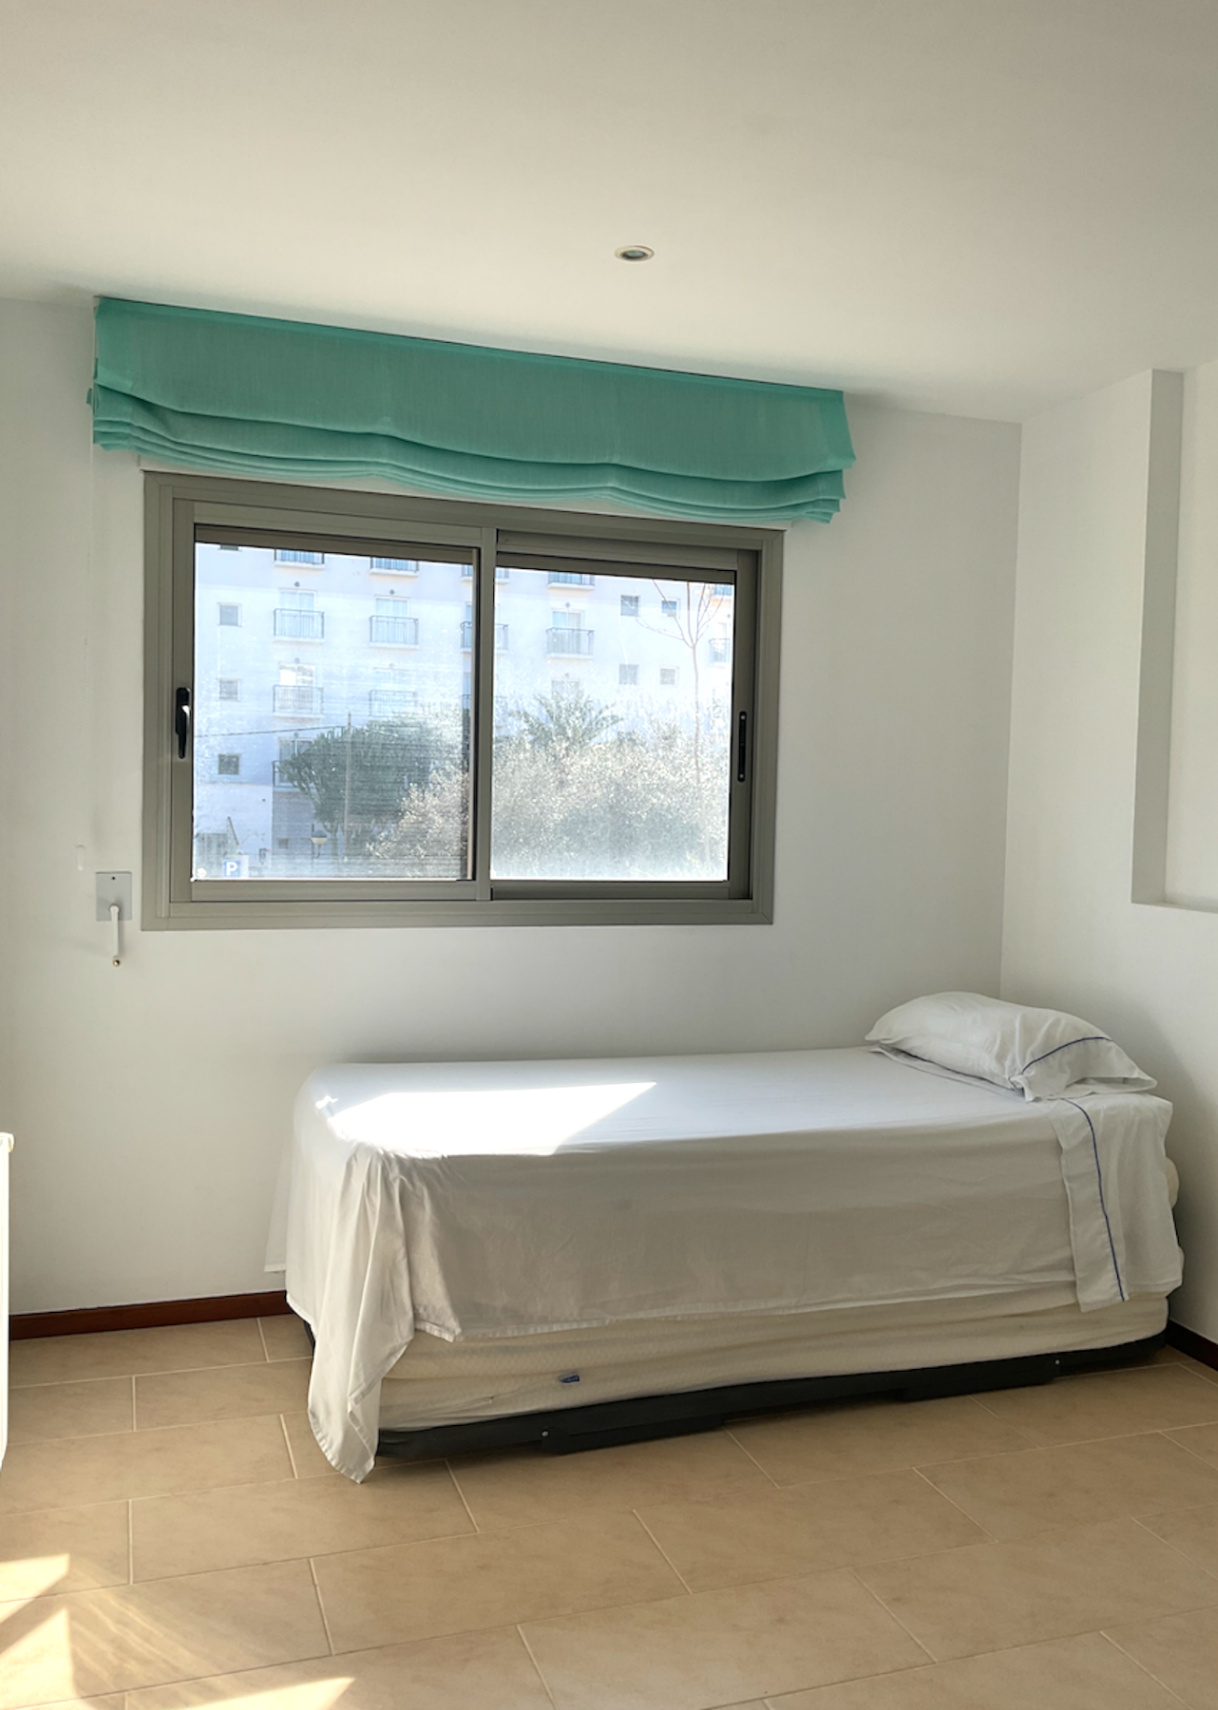 Appartement spacieux à Santa Eulalia près de la plage